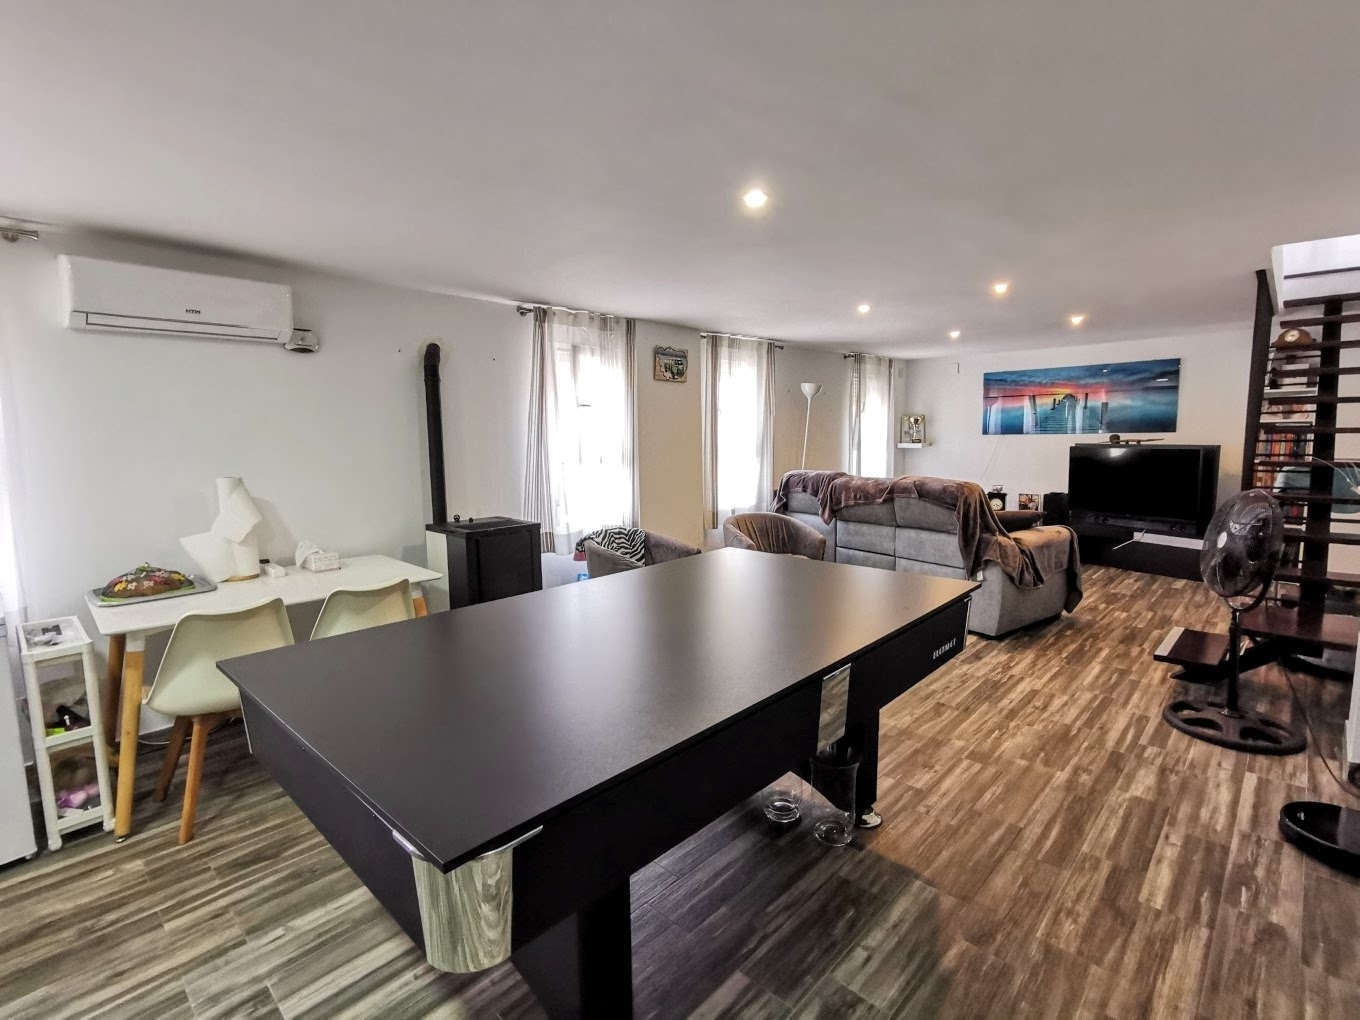 Casa adosada de cinco dormitorios separada en 3 apartamentos en venta en la playa del Arenal de Jávea